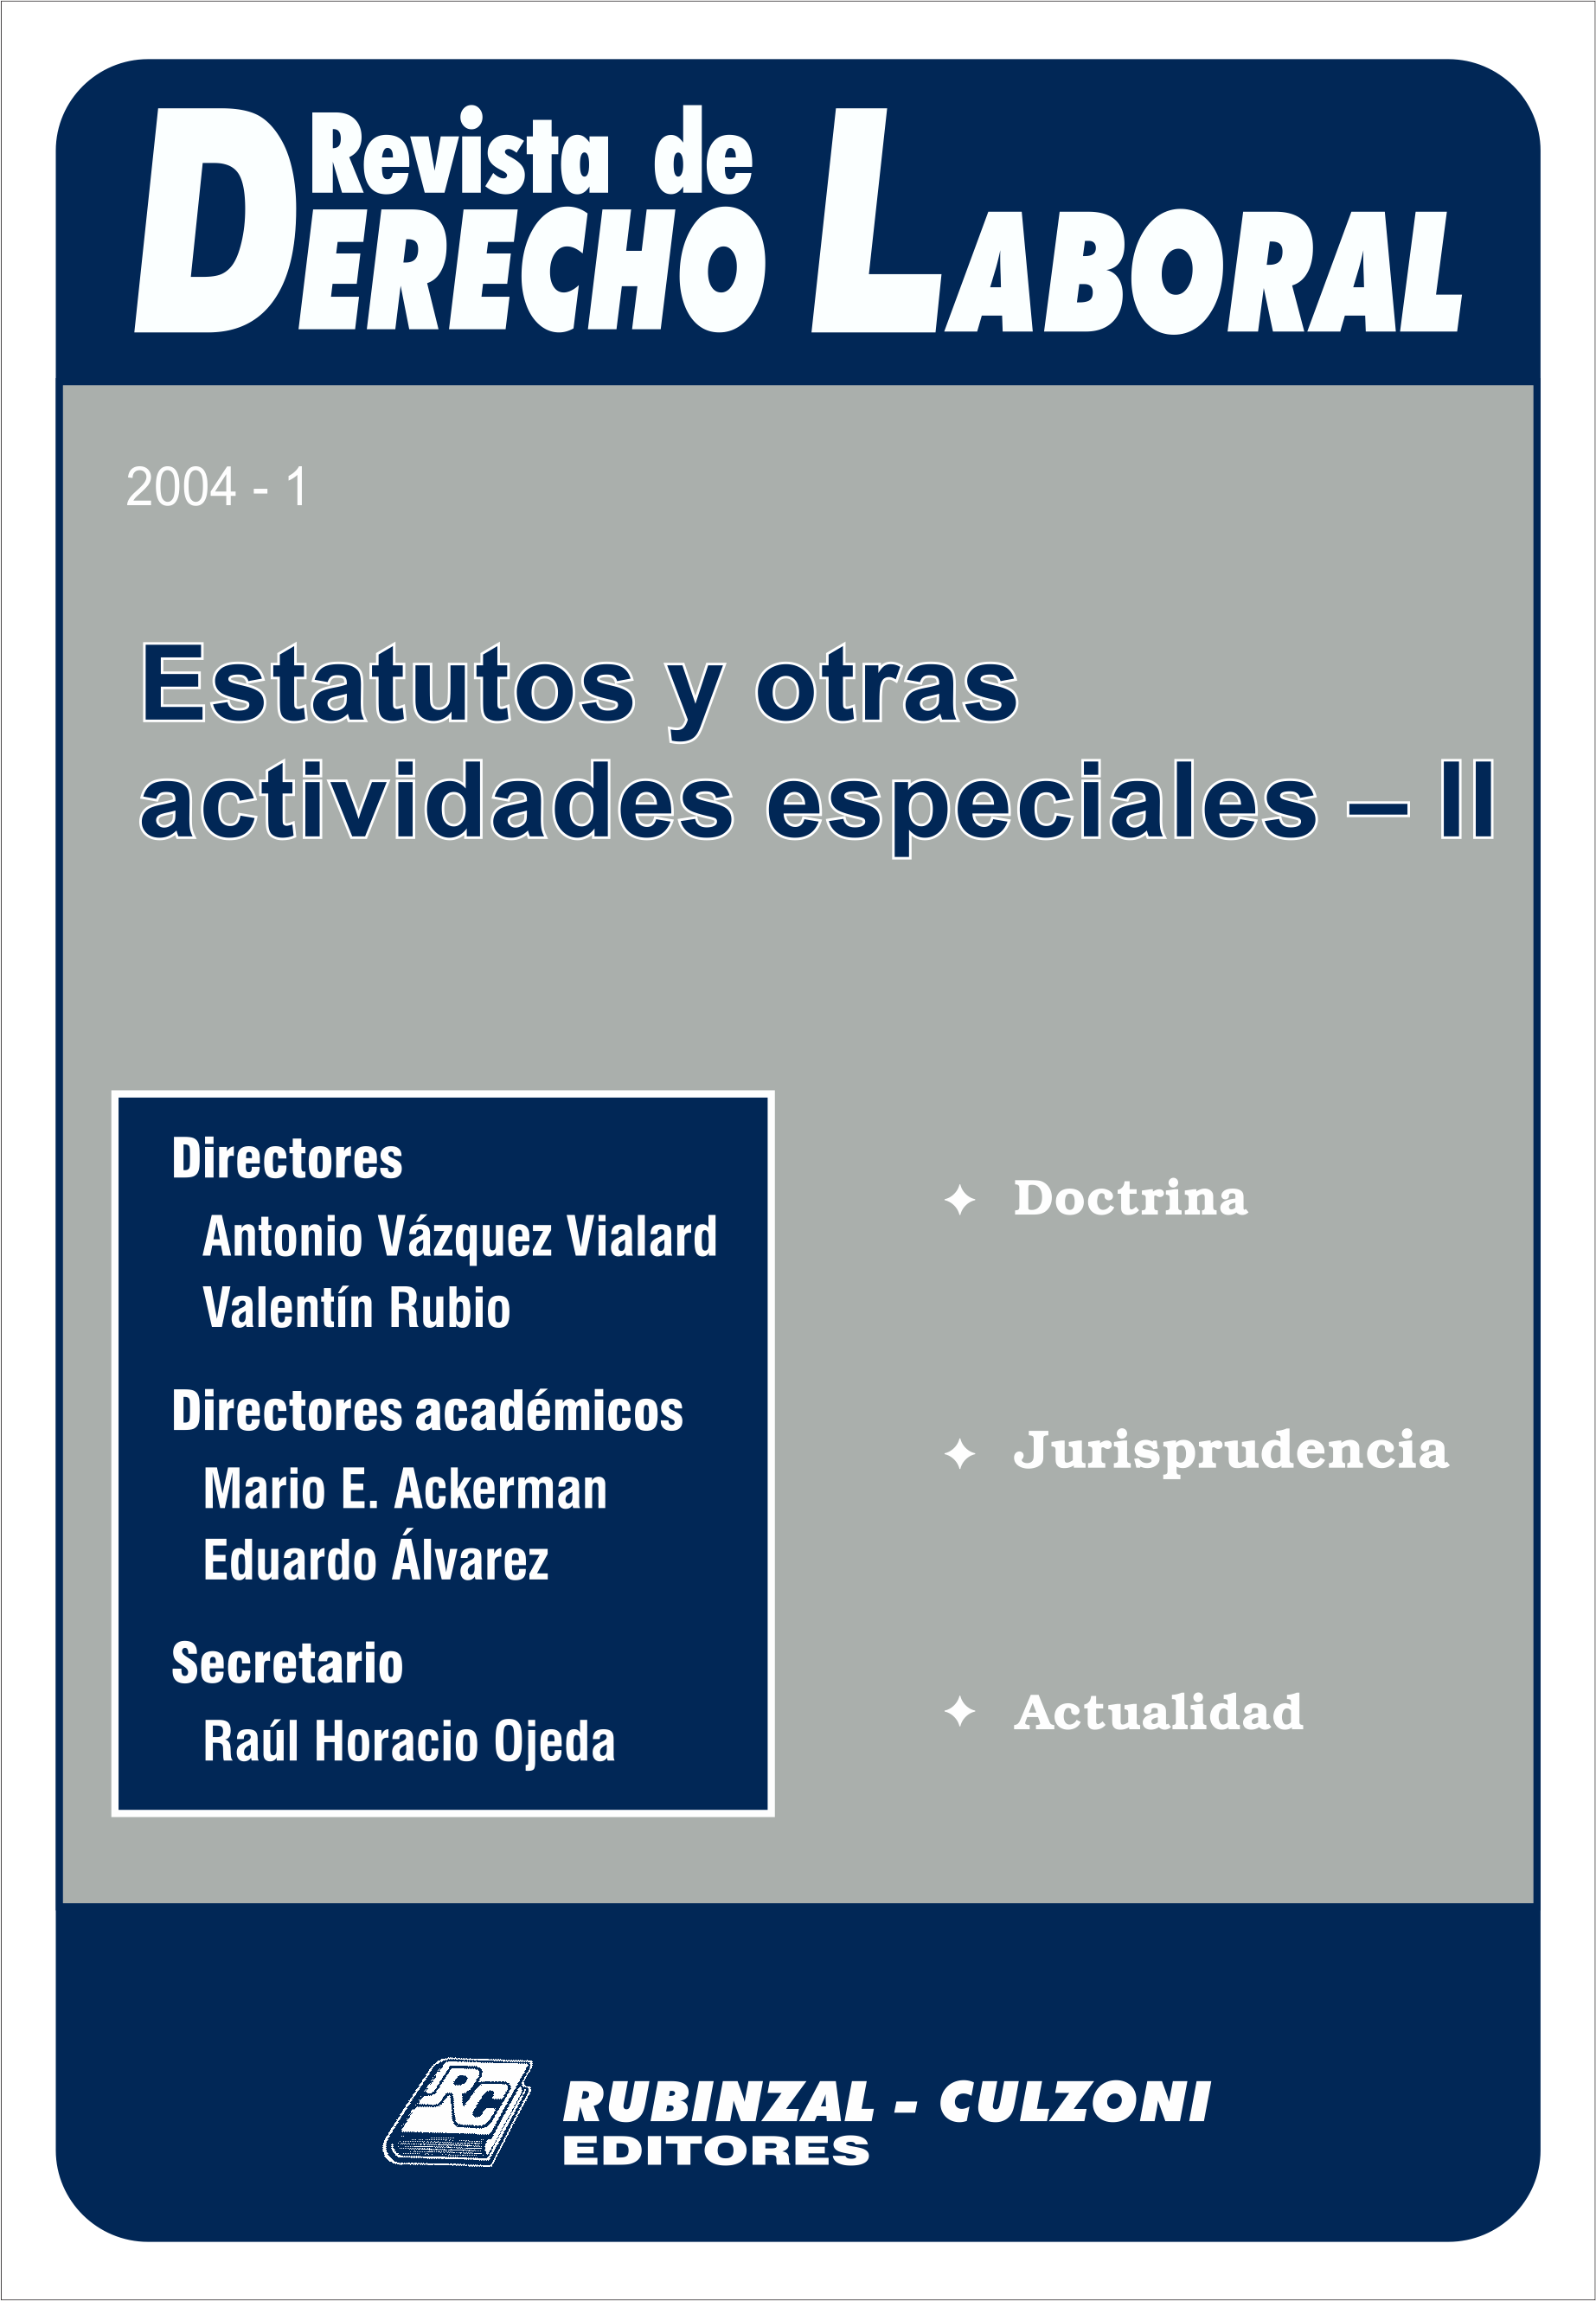 Revista de Derecho Laboral - Estatutos y otras actividades especiales II